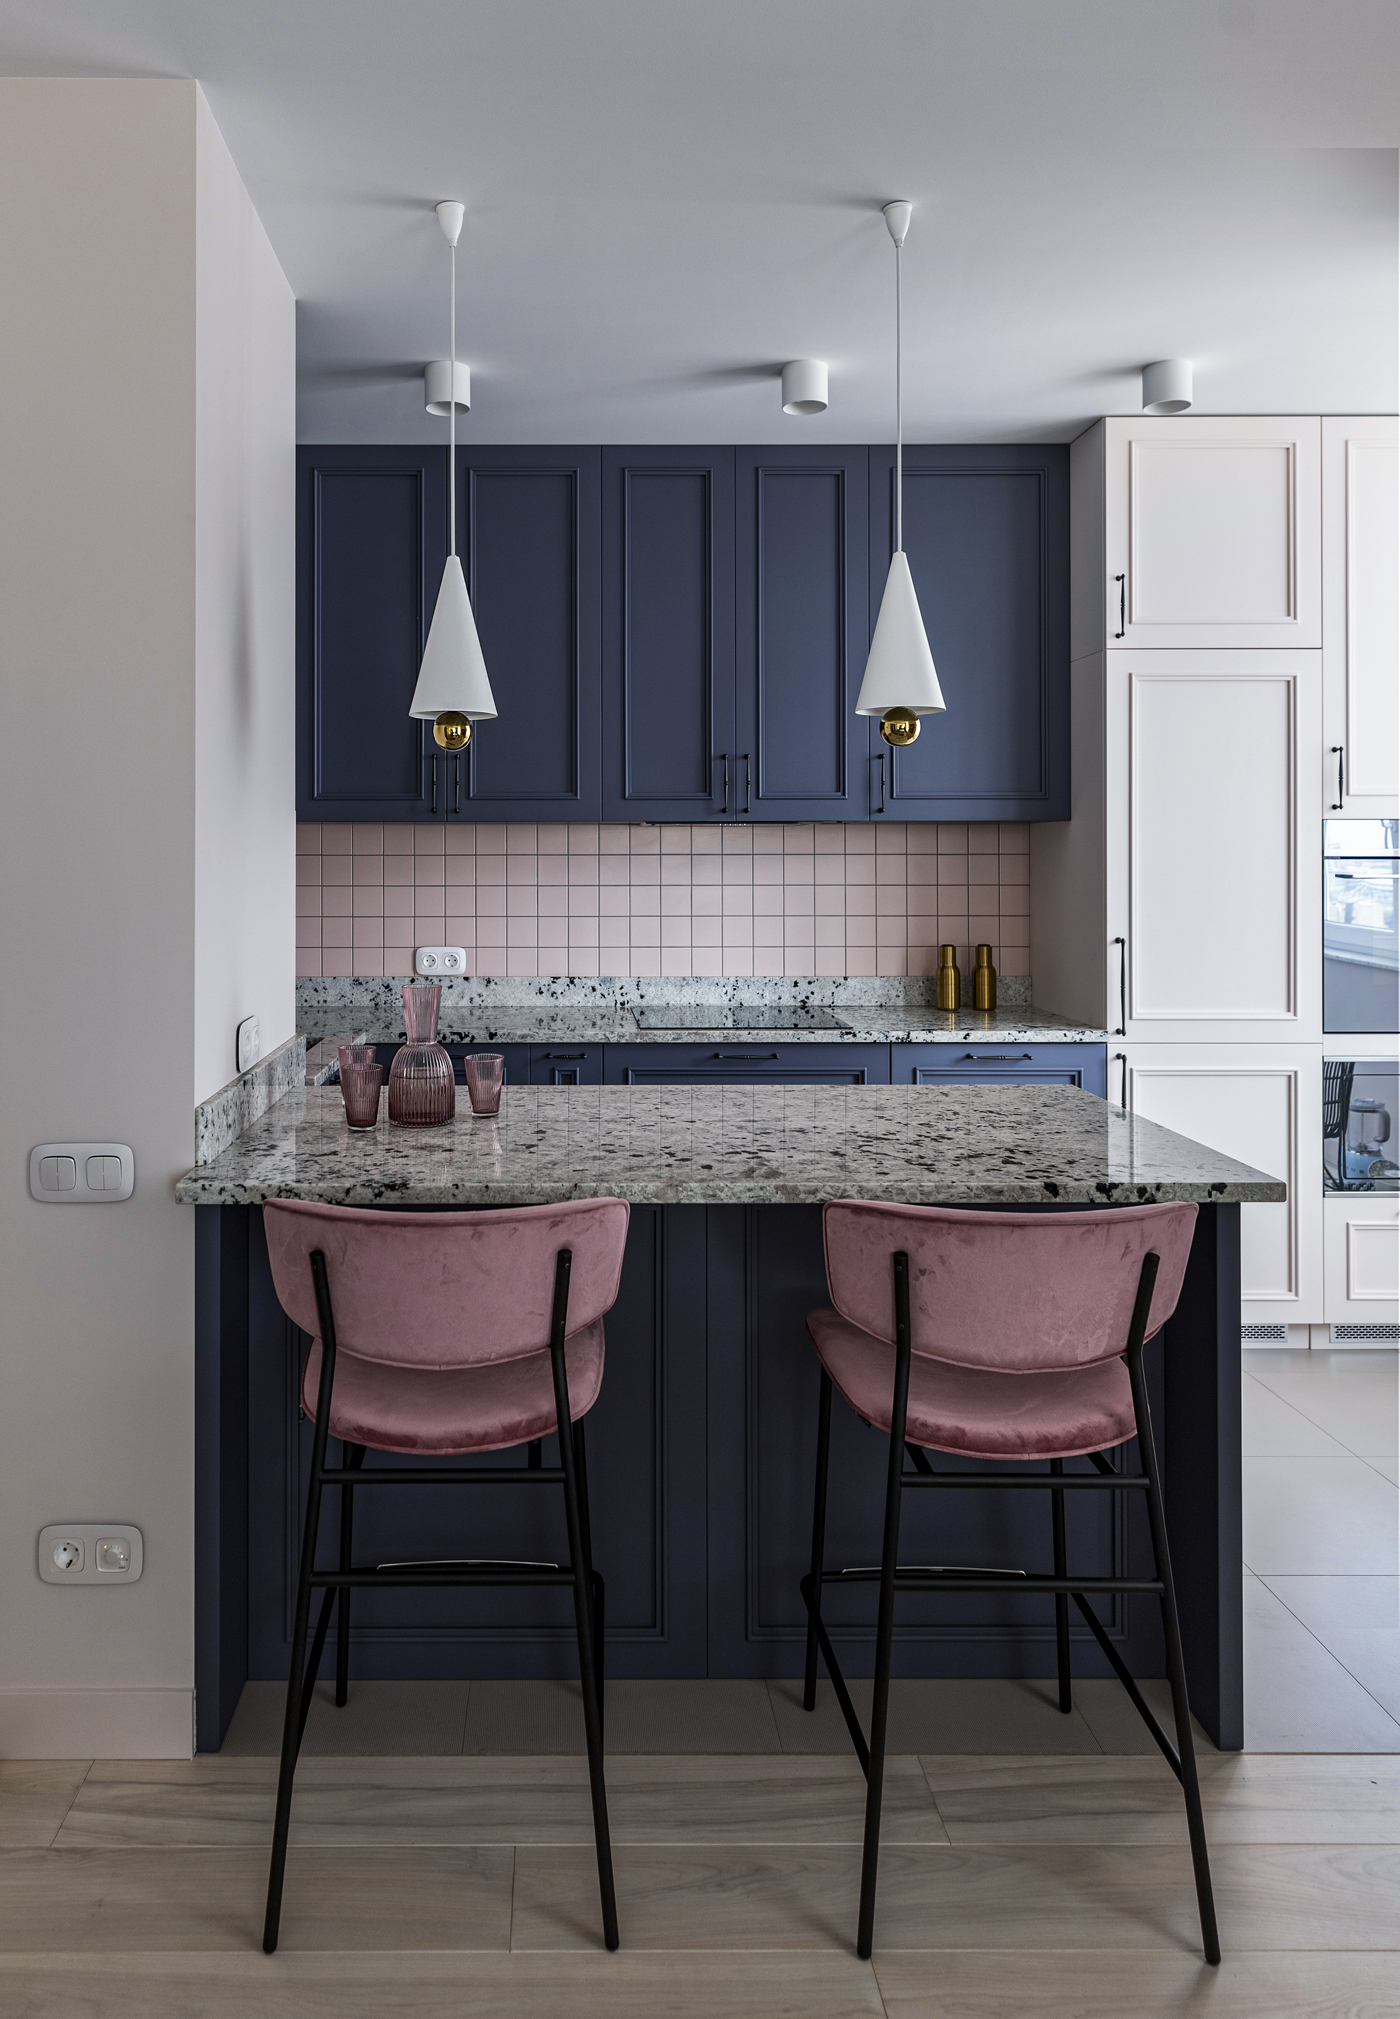 Mặc dù sở hữu diện tích rất nhỏ nhưng phòng bếp này vẫn gây ấn tượng với người nhìn bởi cách kết hợp sơn tủ màu xanh lam đậm, riêng khu vực backsplash ốp gạch mosaic hồng nhạt cùng cặp ghế 'tone sur tone'.